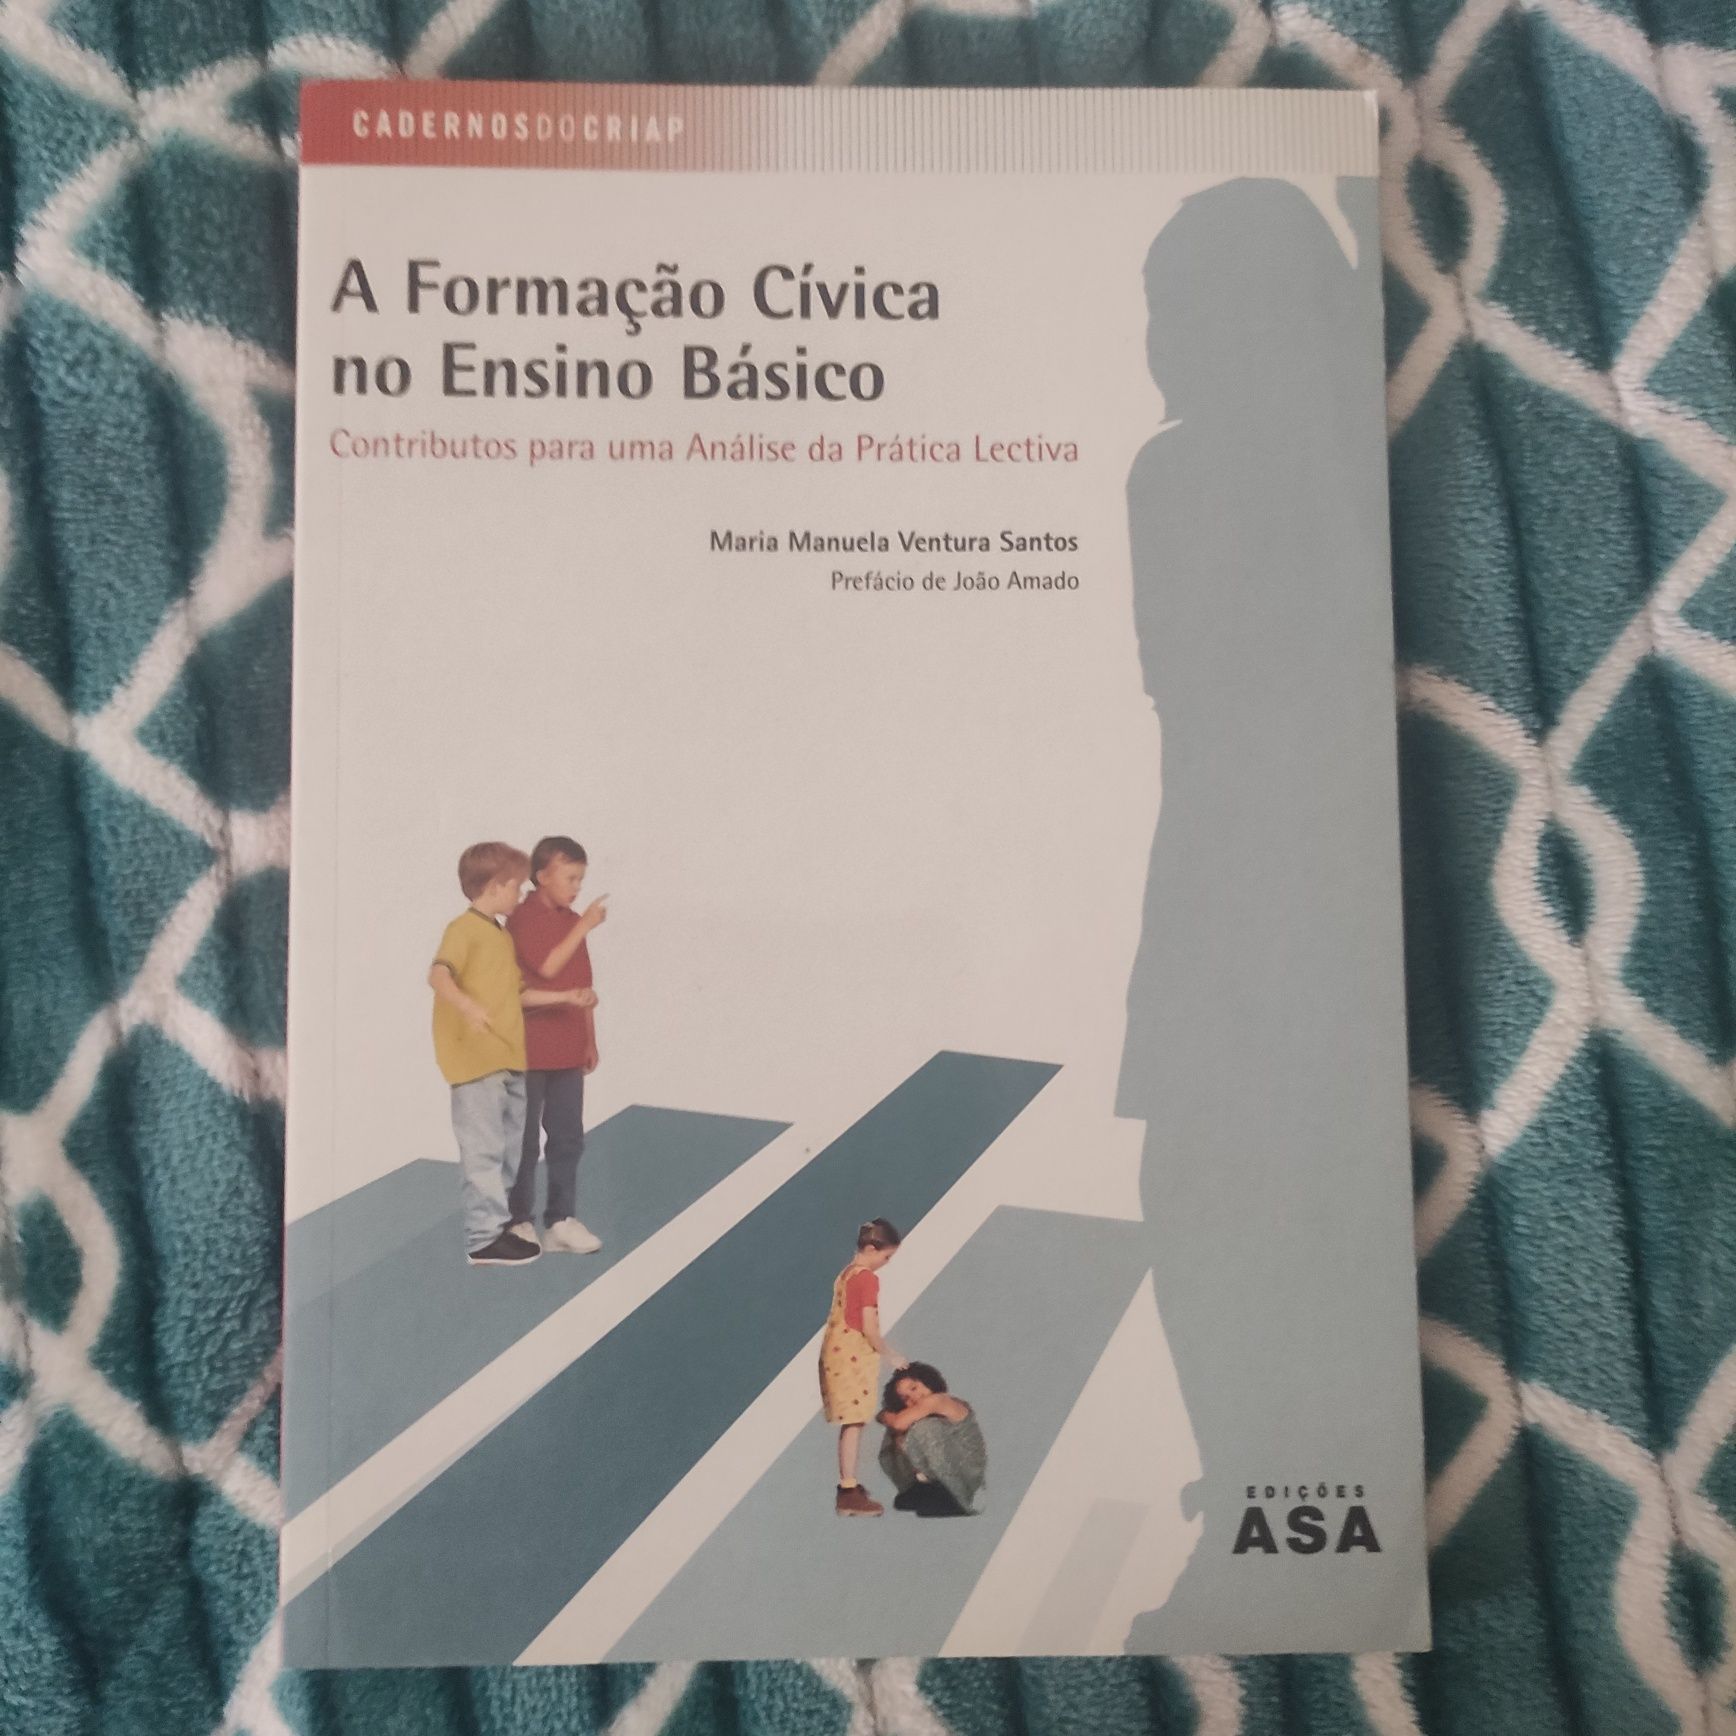 A Formação Cívica no Ensino Básico, de Maria Manuela Ventura Santos.
C